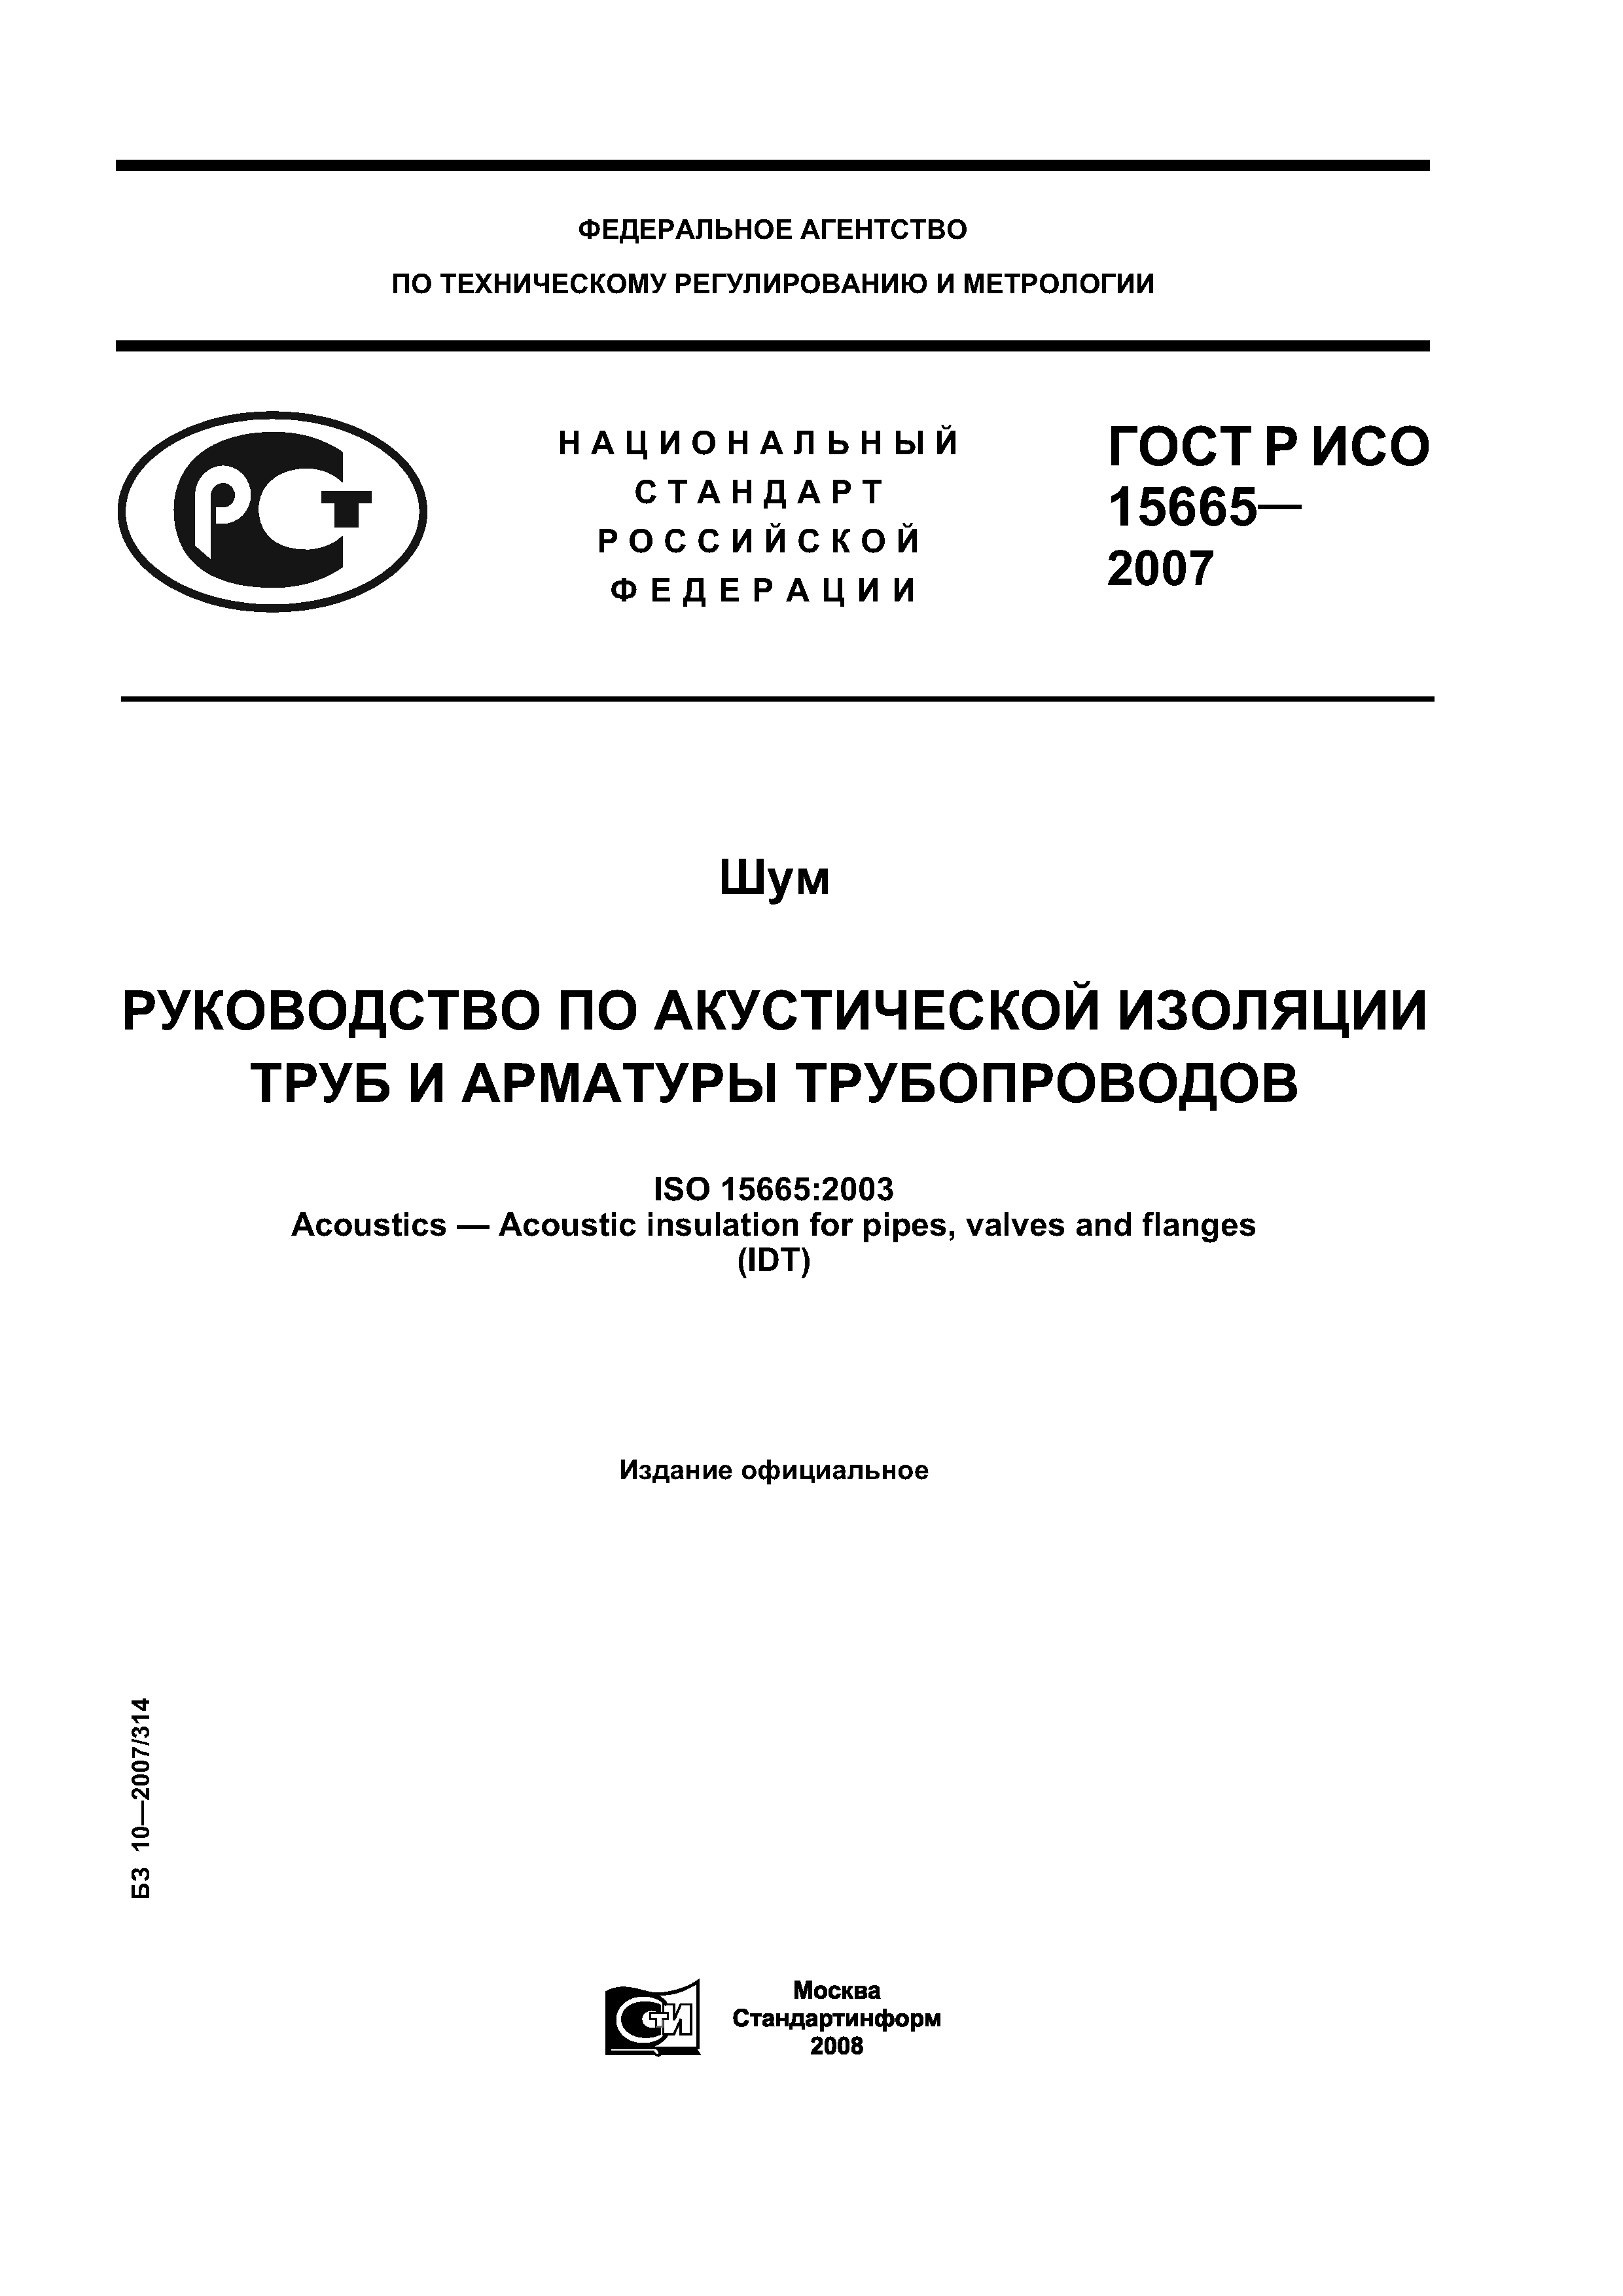 ГОСТ Р ИСО 15665-2007